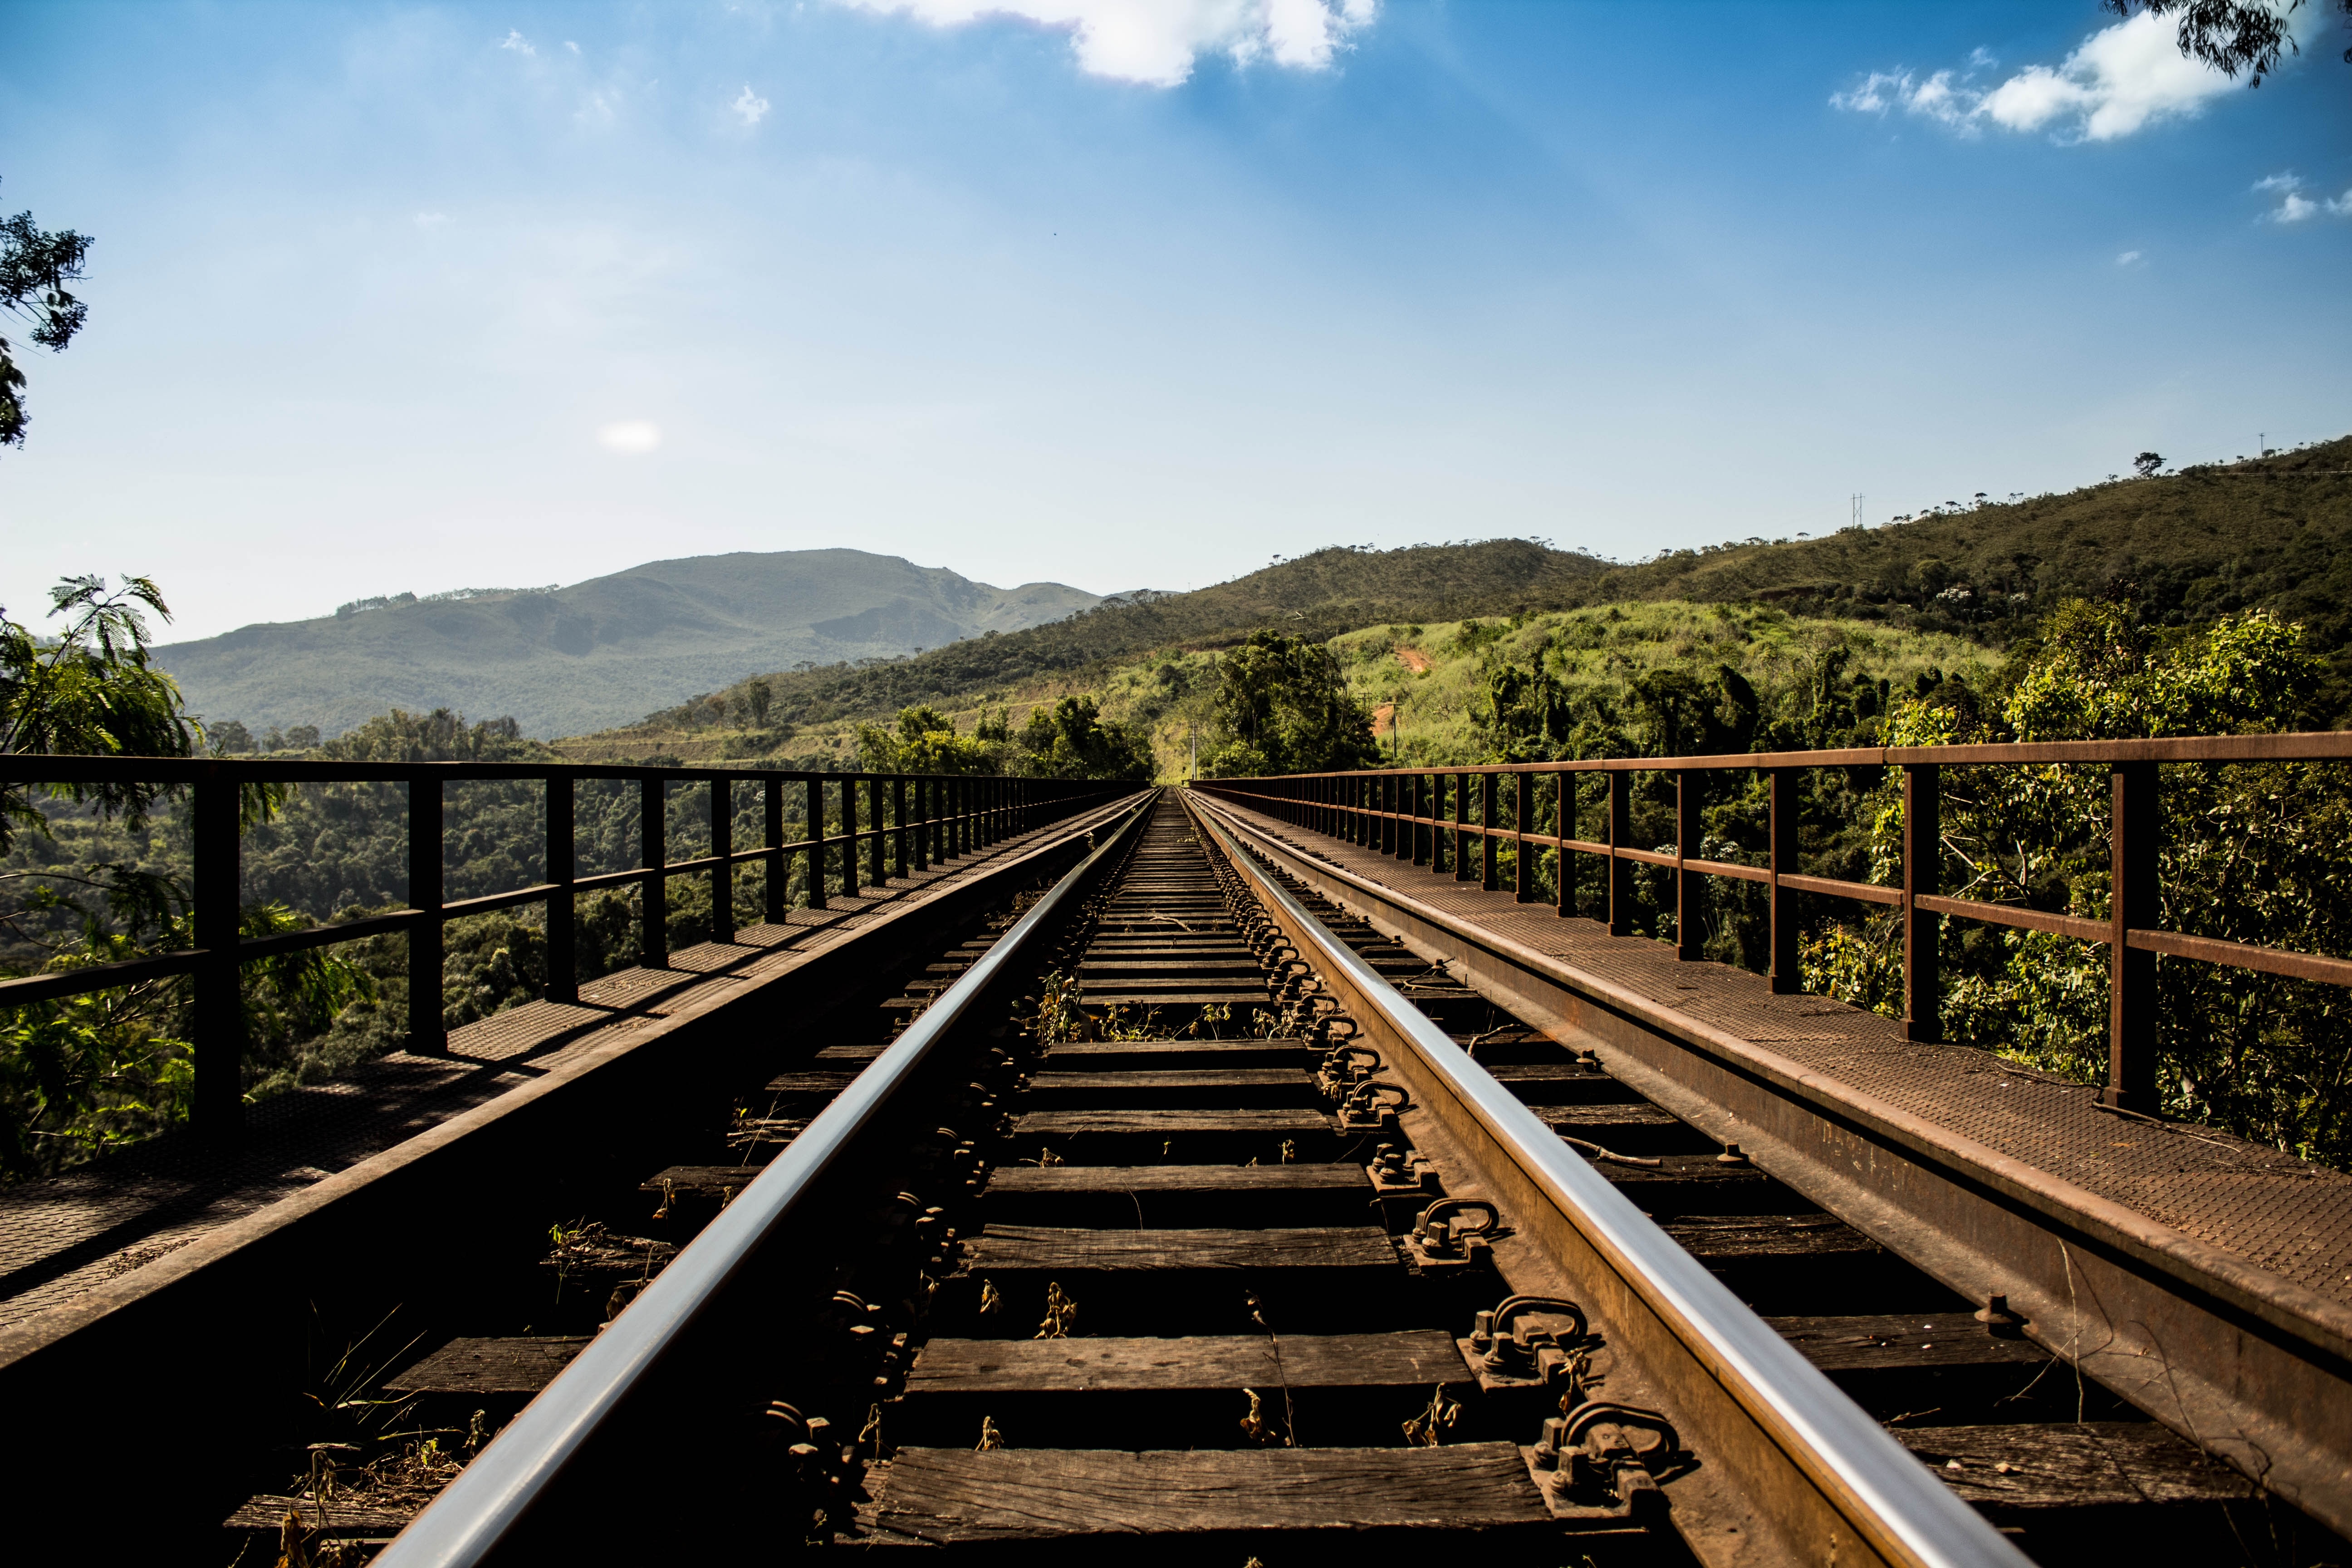 Картинка с железной дорогой на мосту